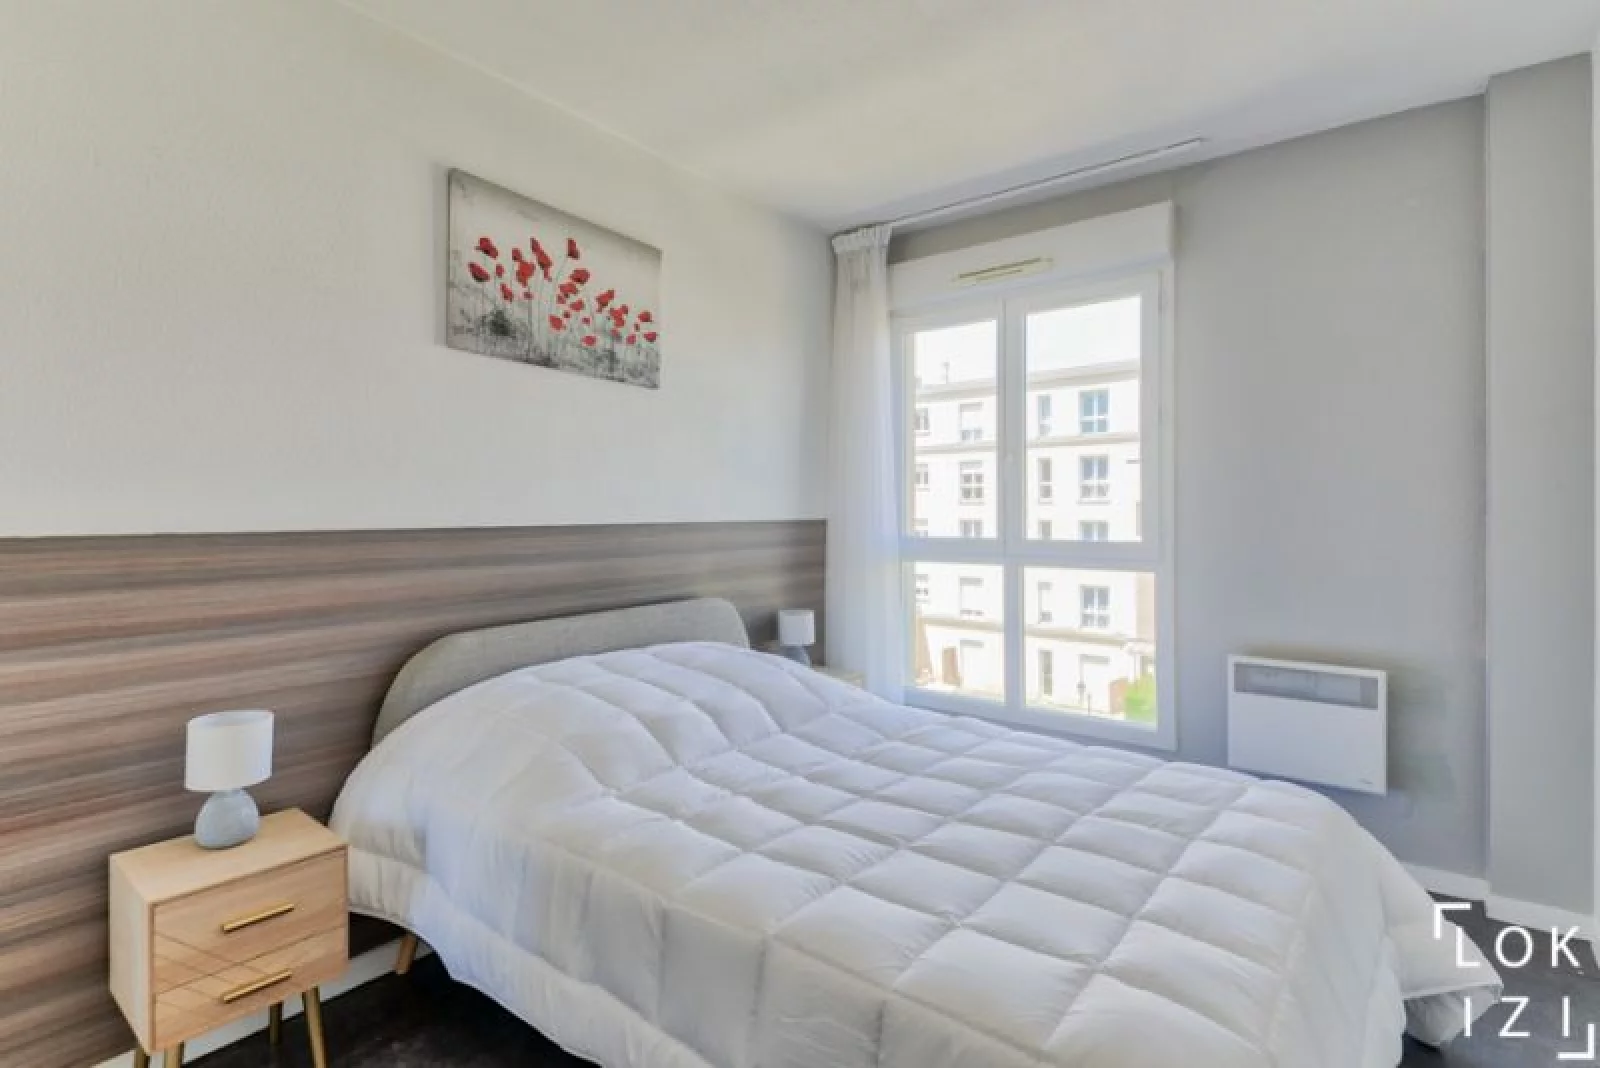 Location appartement meublé 3 pièces 70m² (Paris est - Bry sur Marne)